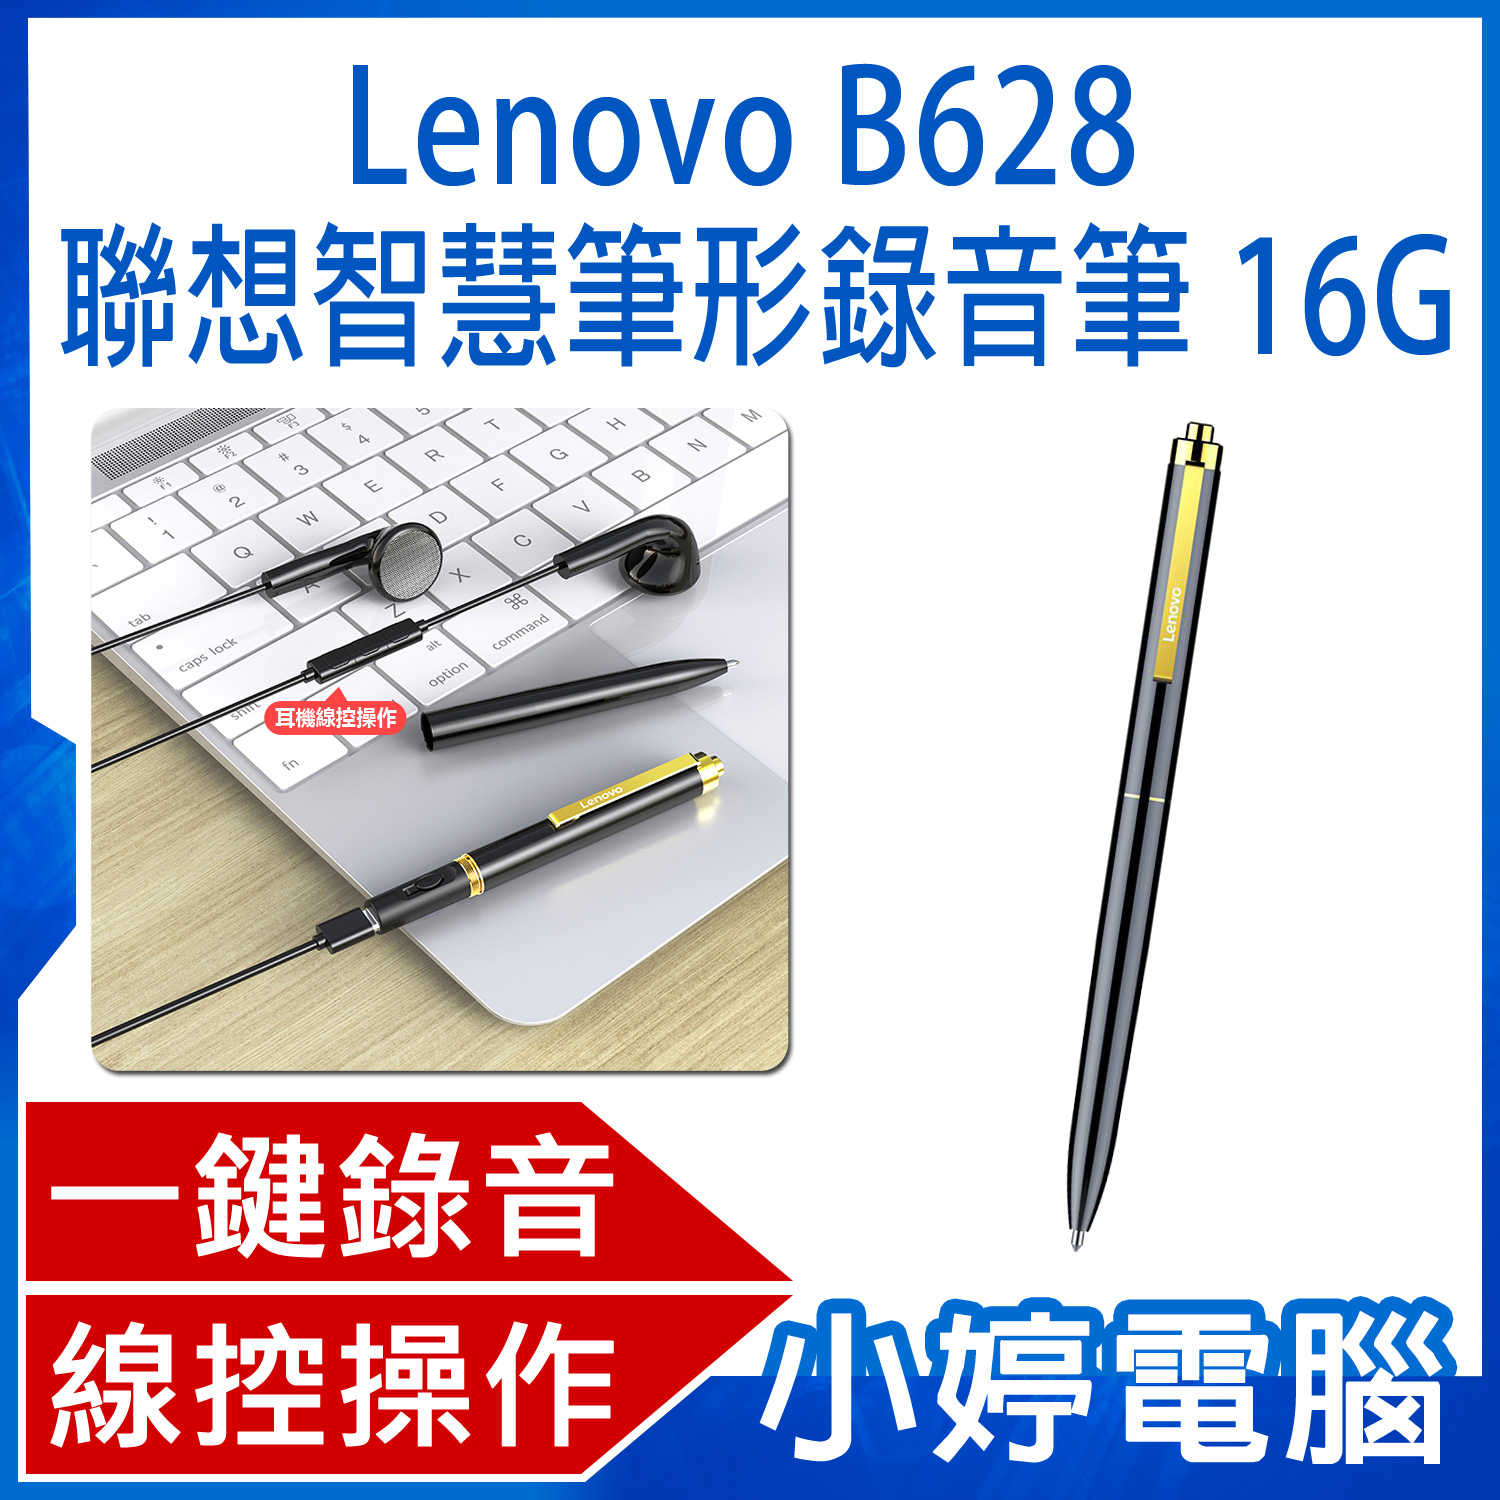 【小婷電腦】Lenovo B628 聯想智慧筆形錄音筆 16G 一鍵錄音 智慧降噪 線控操作 斷電保存